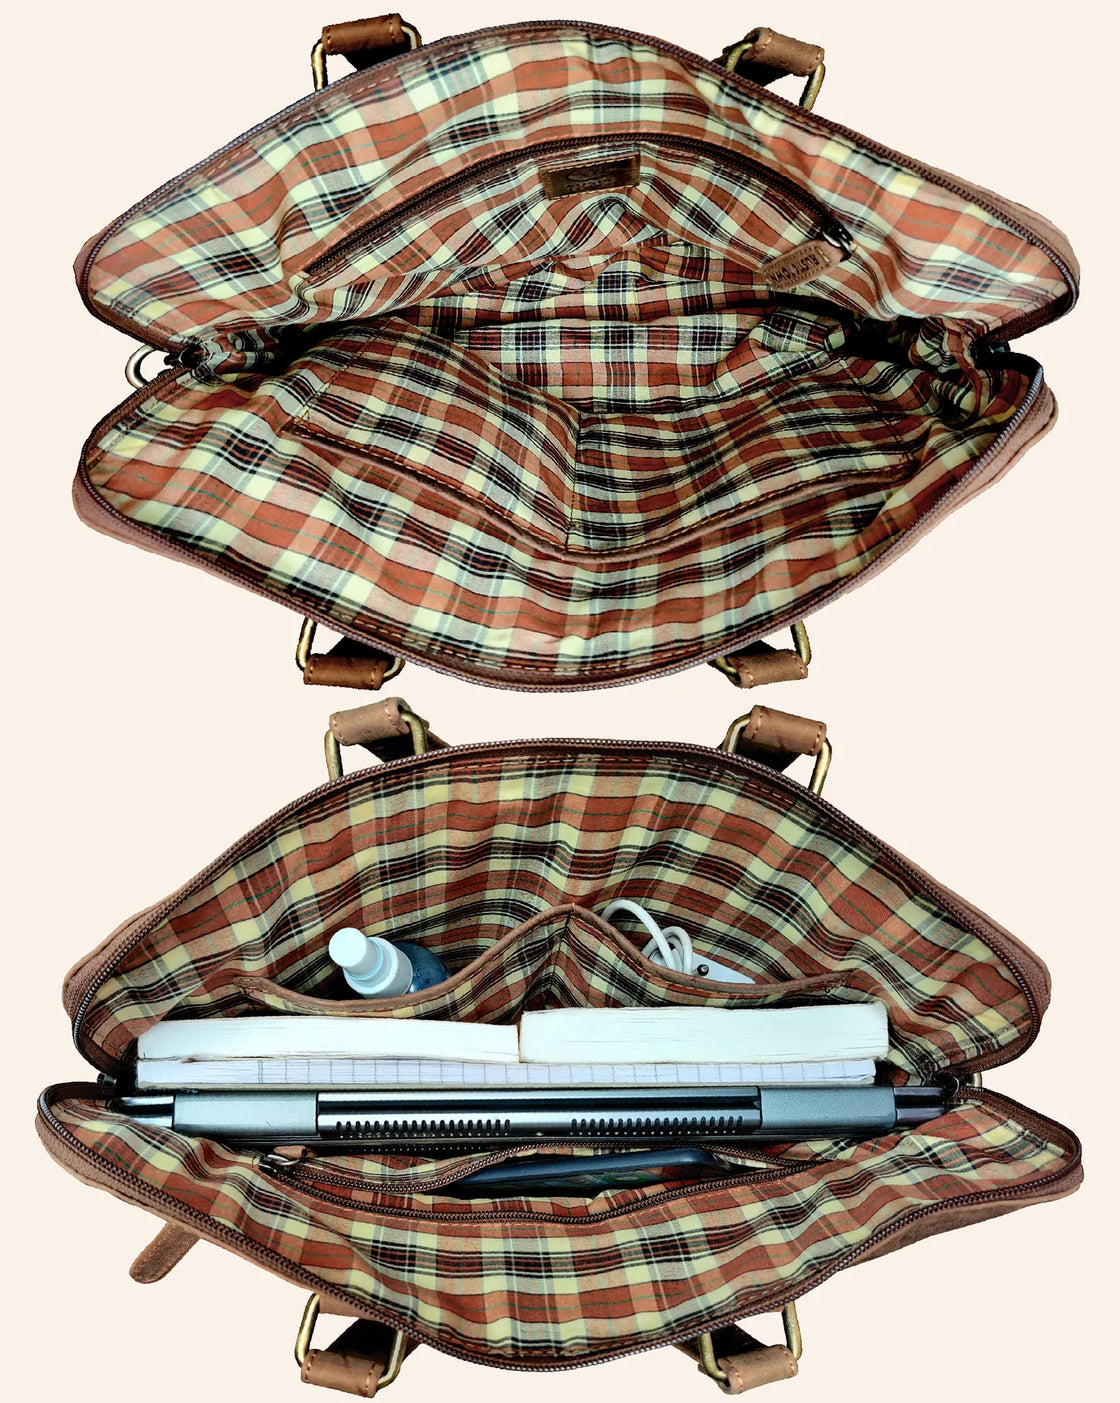 Leather Messenger Bag for Men Women Vintage Travel 14 inch Laptop Briefcase Shoulder Bag